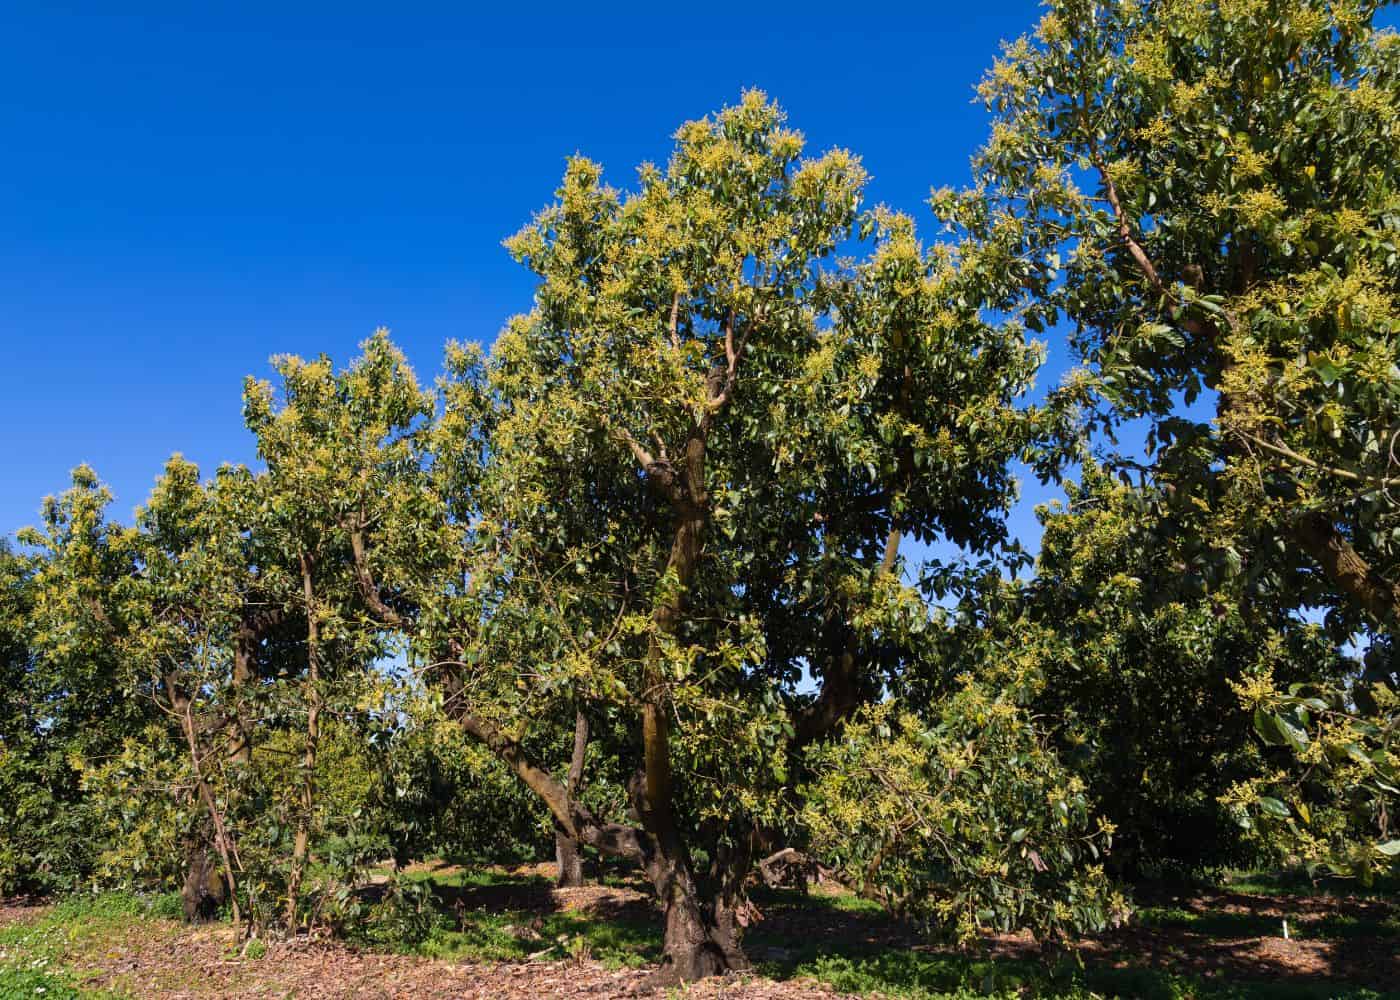 Mature avocado trees